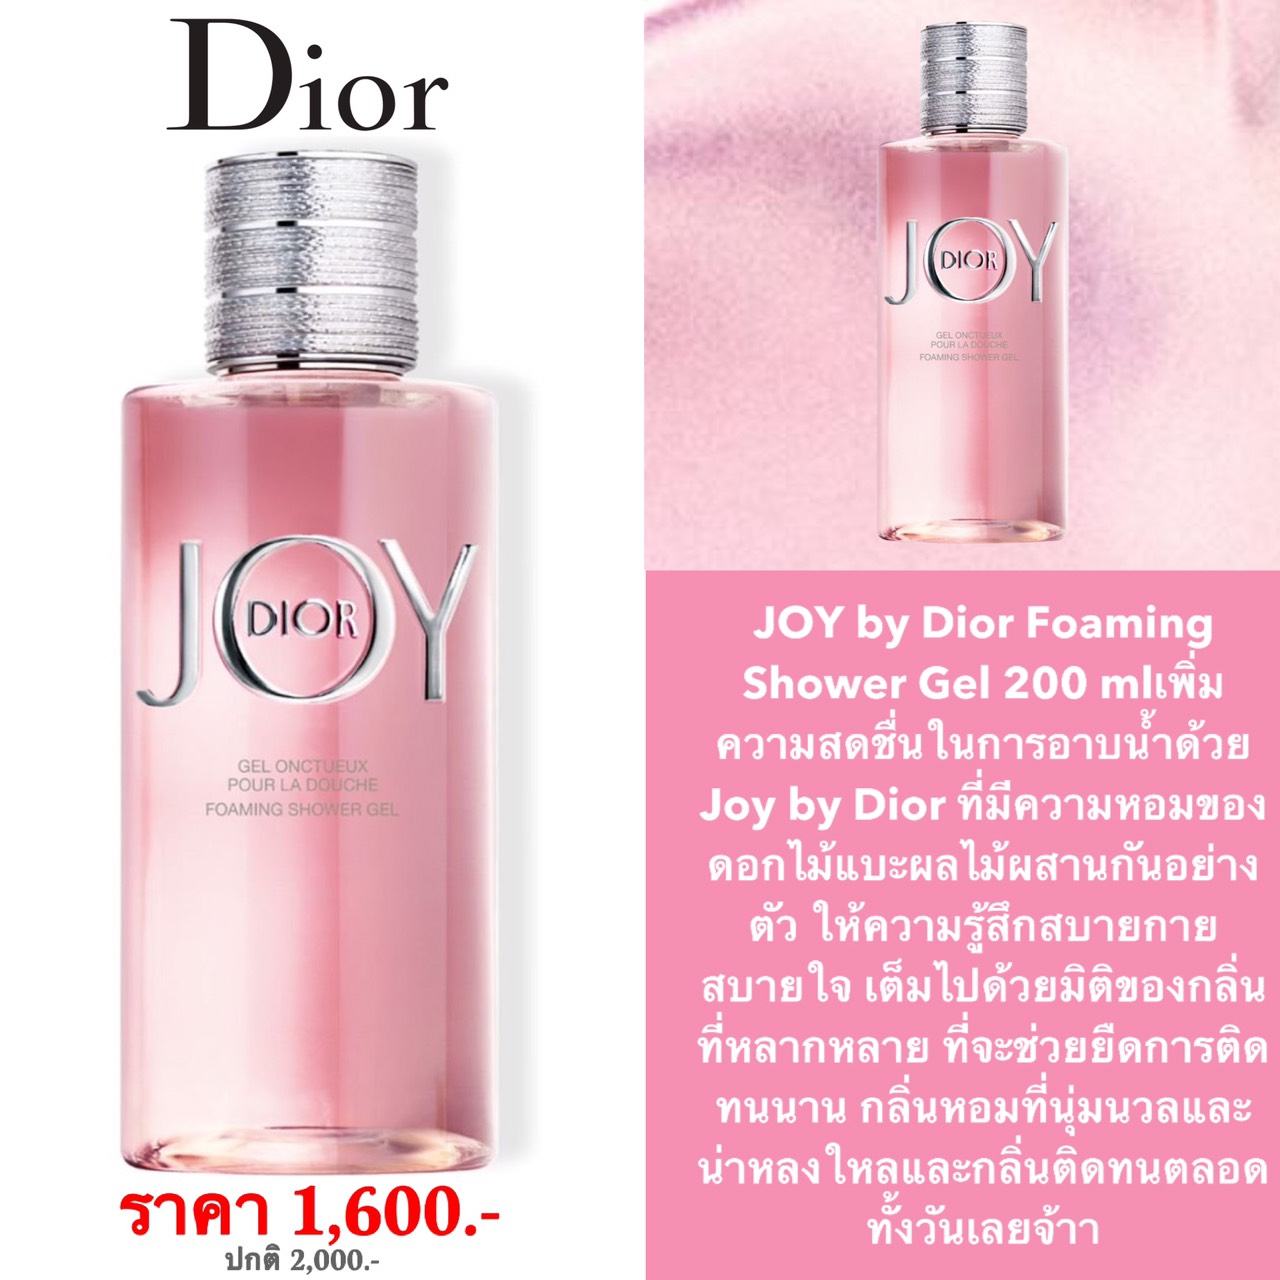 Dior Joy  Foaming Shower Gel 200ml.เจลอาบน้ำที่อาบแล้วตัวหอม ผ่อนคลาย ฟองนุ่มละเอียด พร้อมกลิ่นหอมที่นุ่มนวลและน่าหลงใหลและกลิ่นติดทนตลอดทั้งวัน